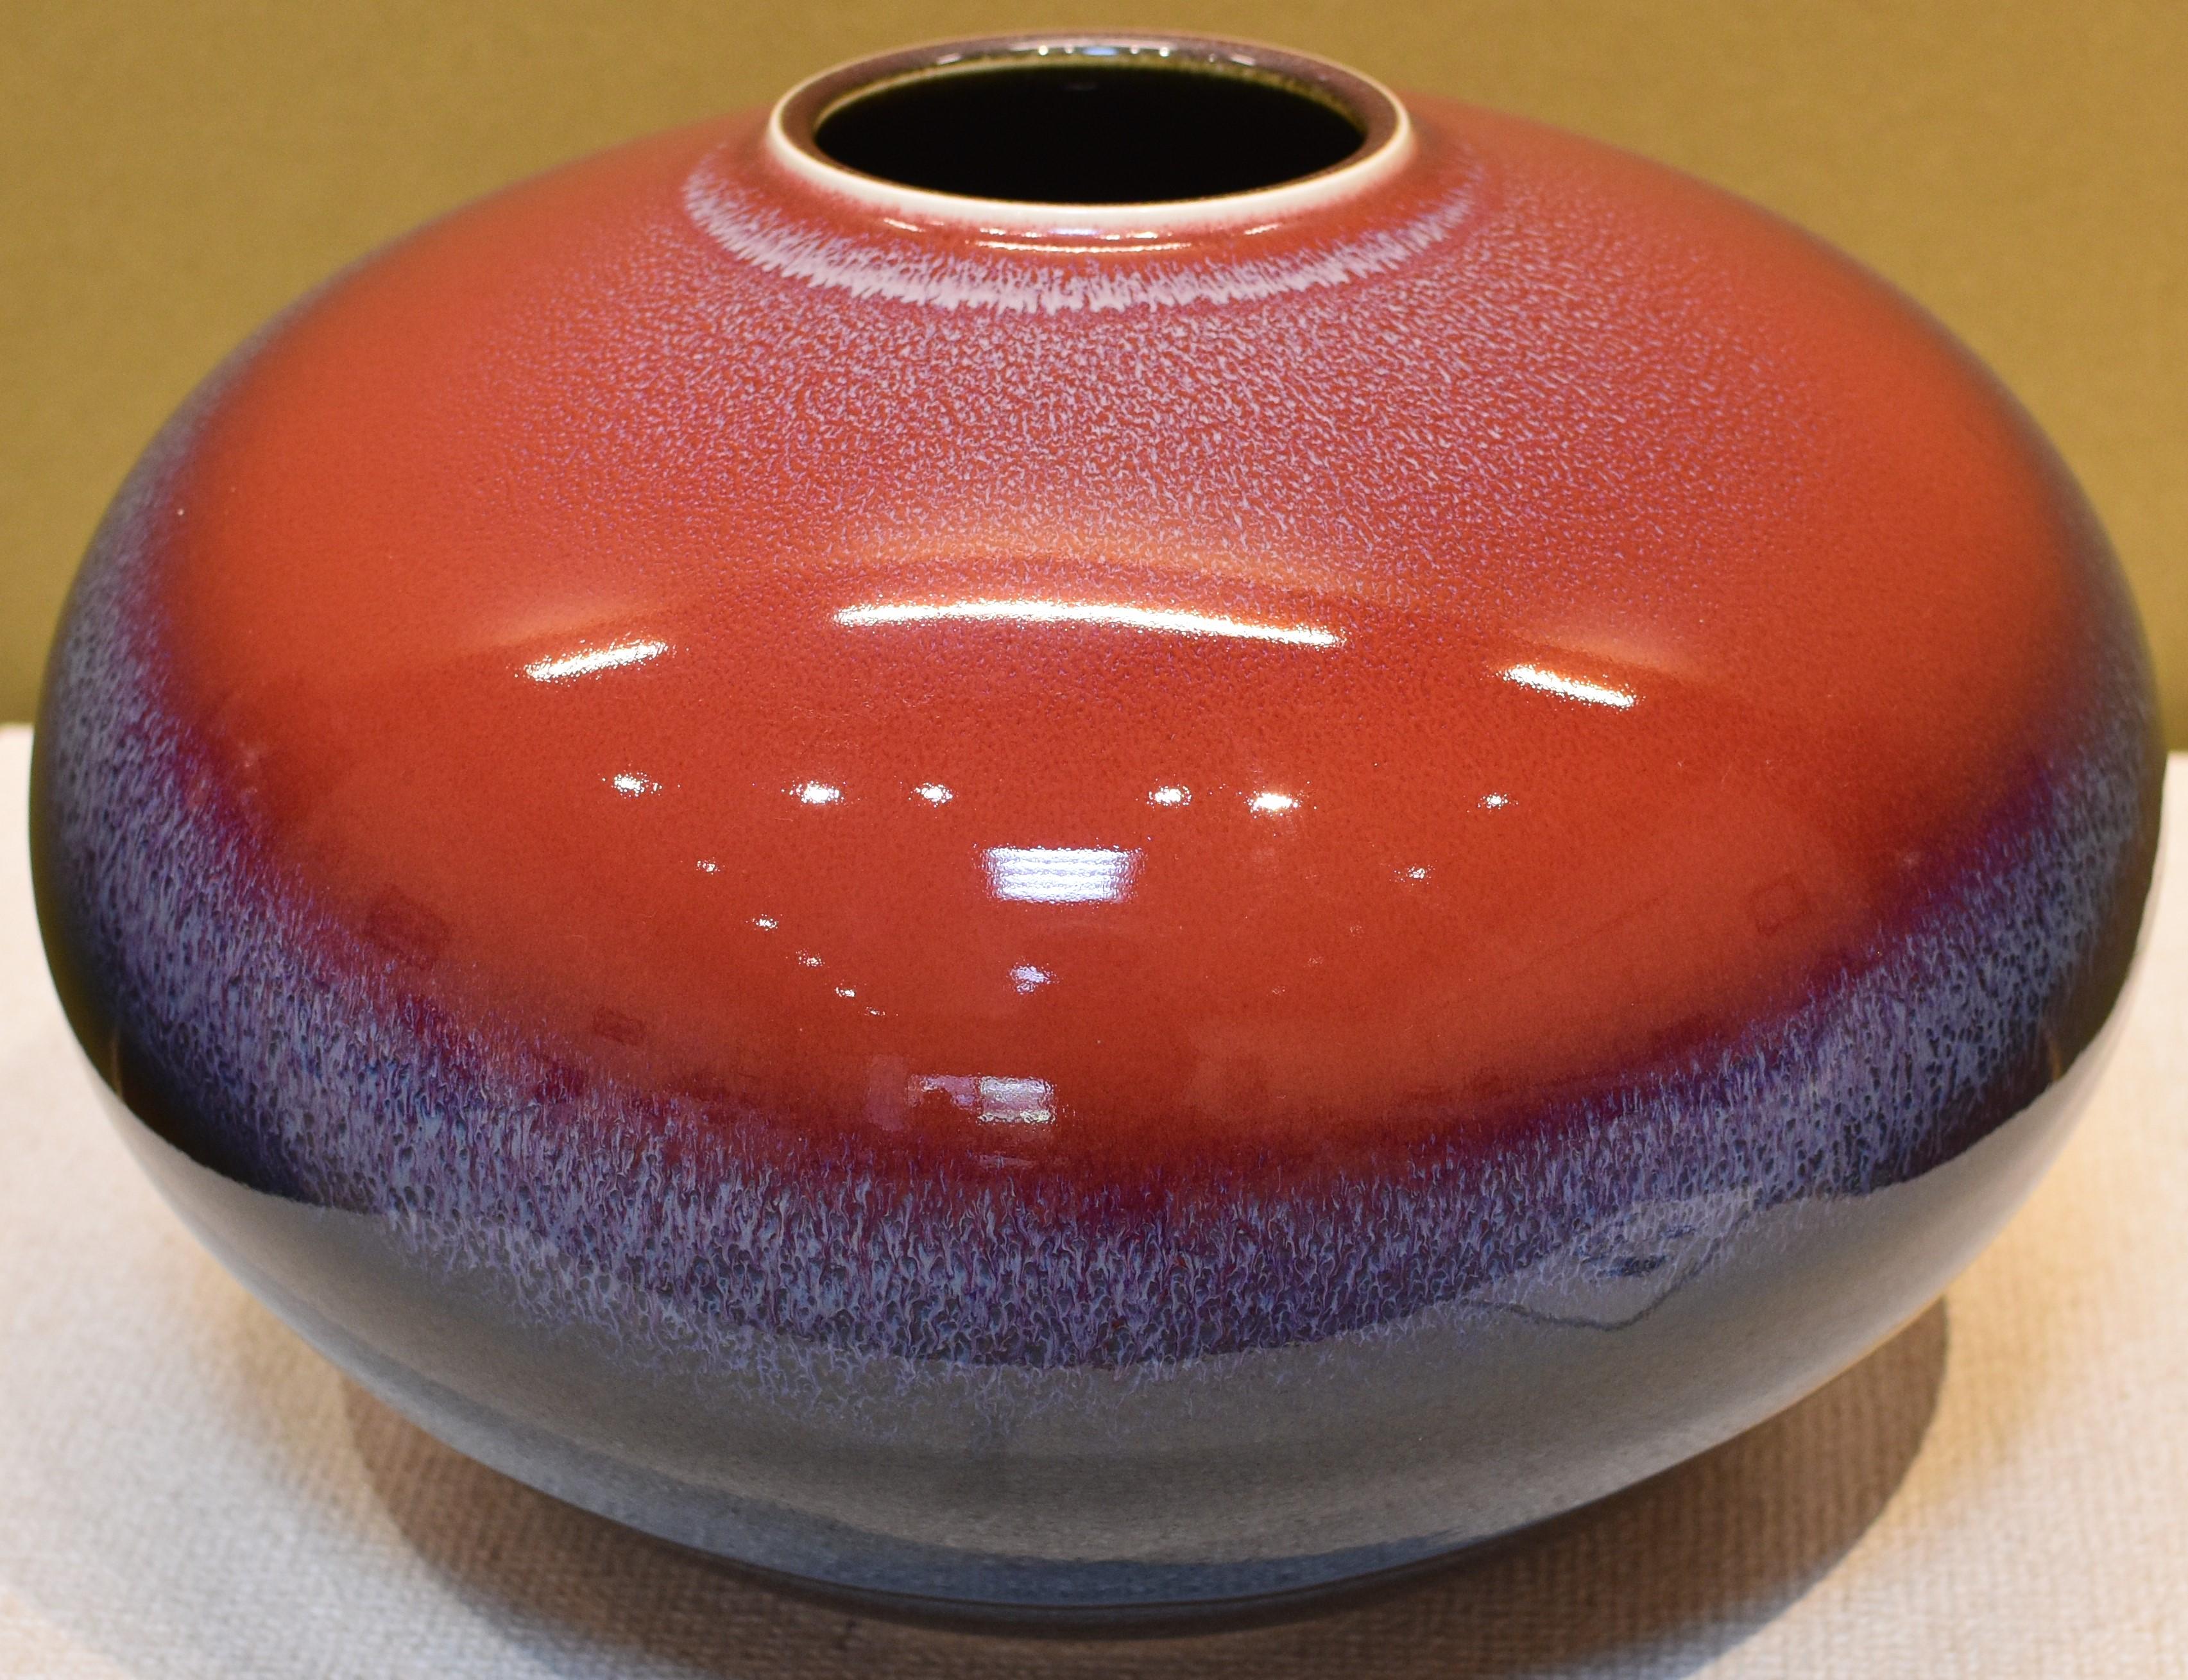 Vase extraordinaire en porcelaine décorative contemporaine japonaise émaillée à la main, de qualité muséale, une pièce d'exposition d'une forme saisissante en rouge, bleu et noir profonds, par un maître porcelainier de la région d'Arita-Imari au